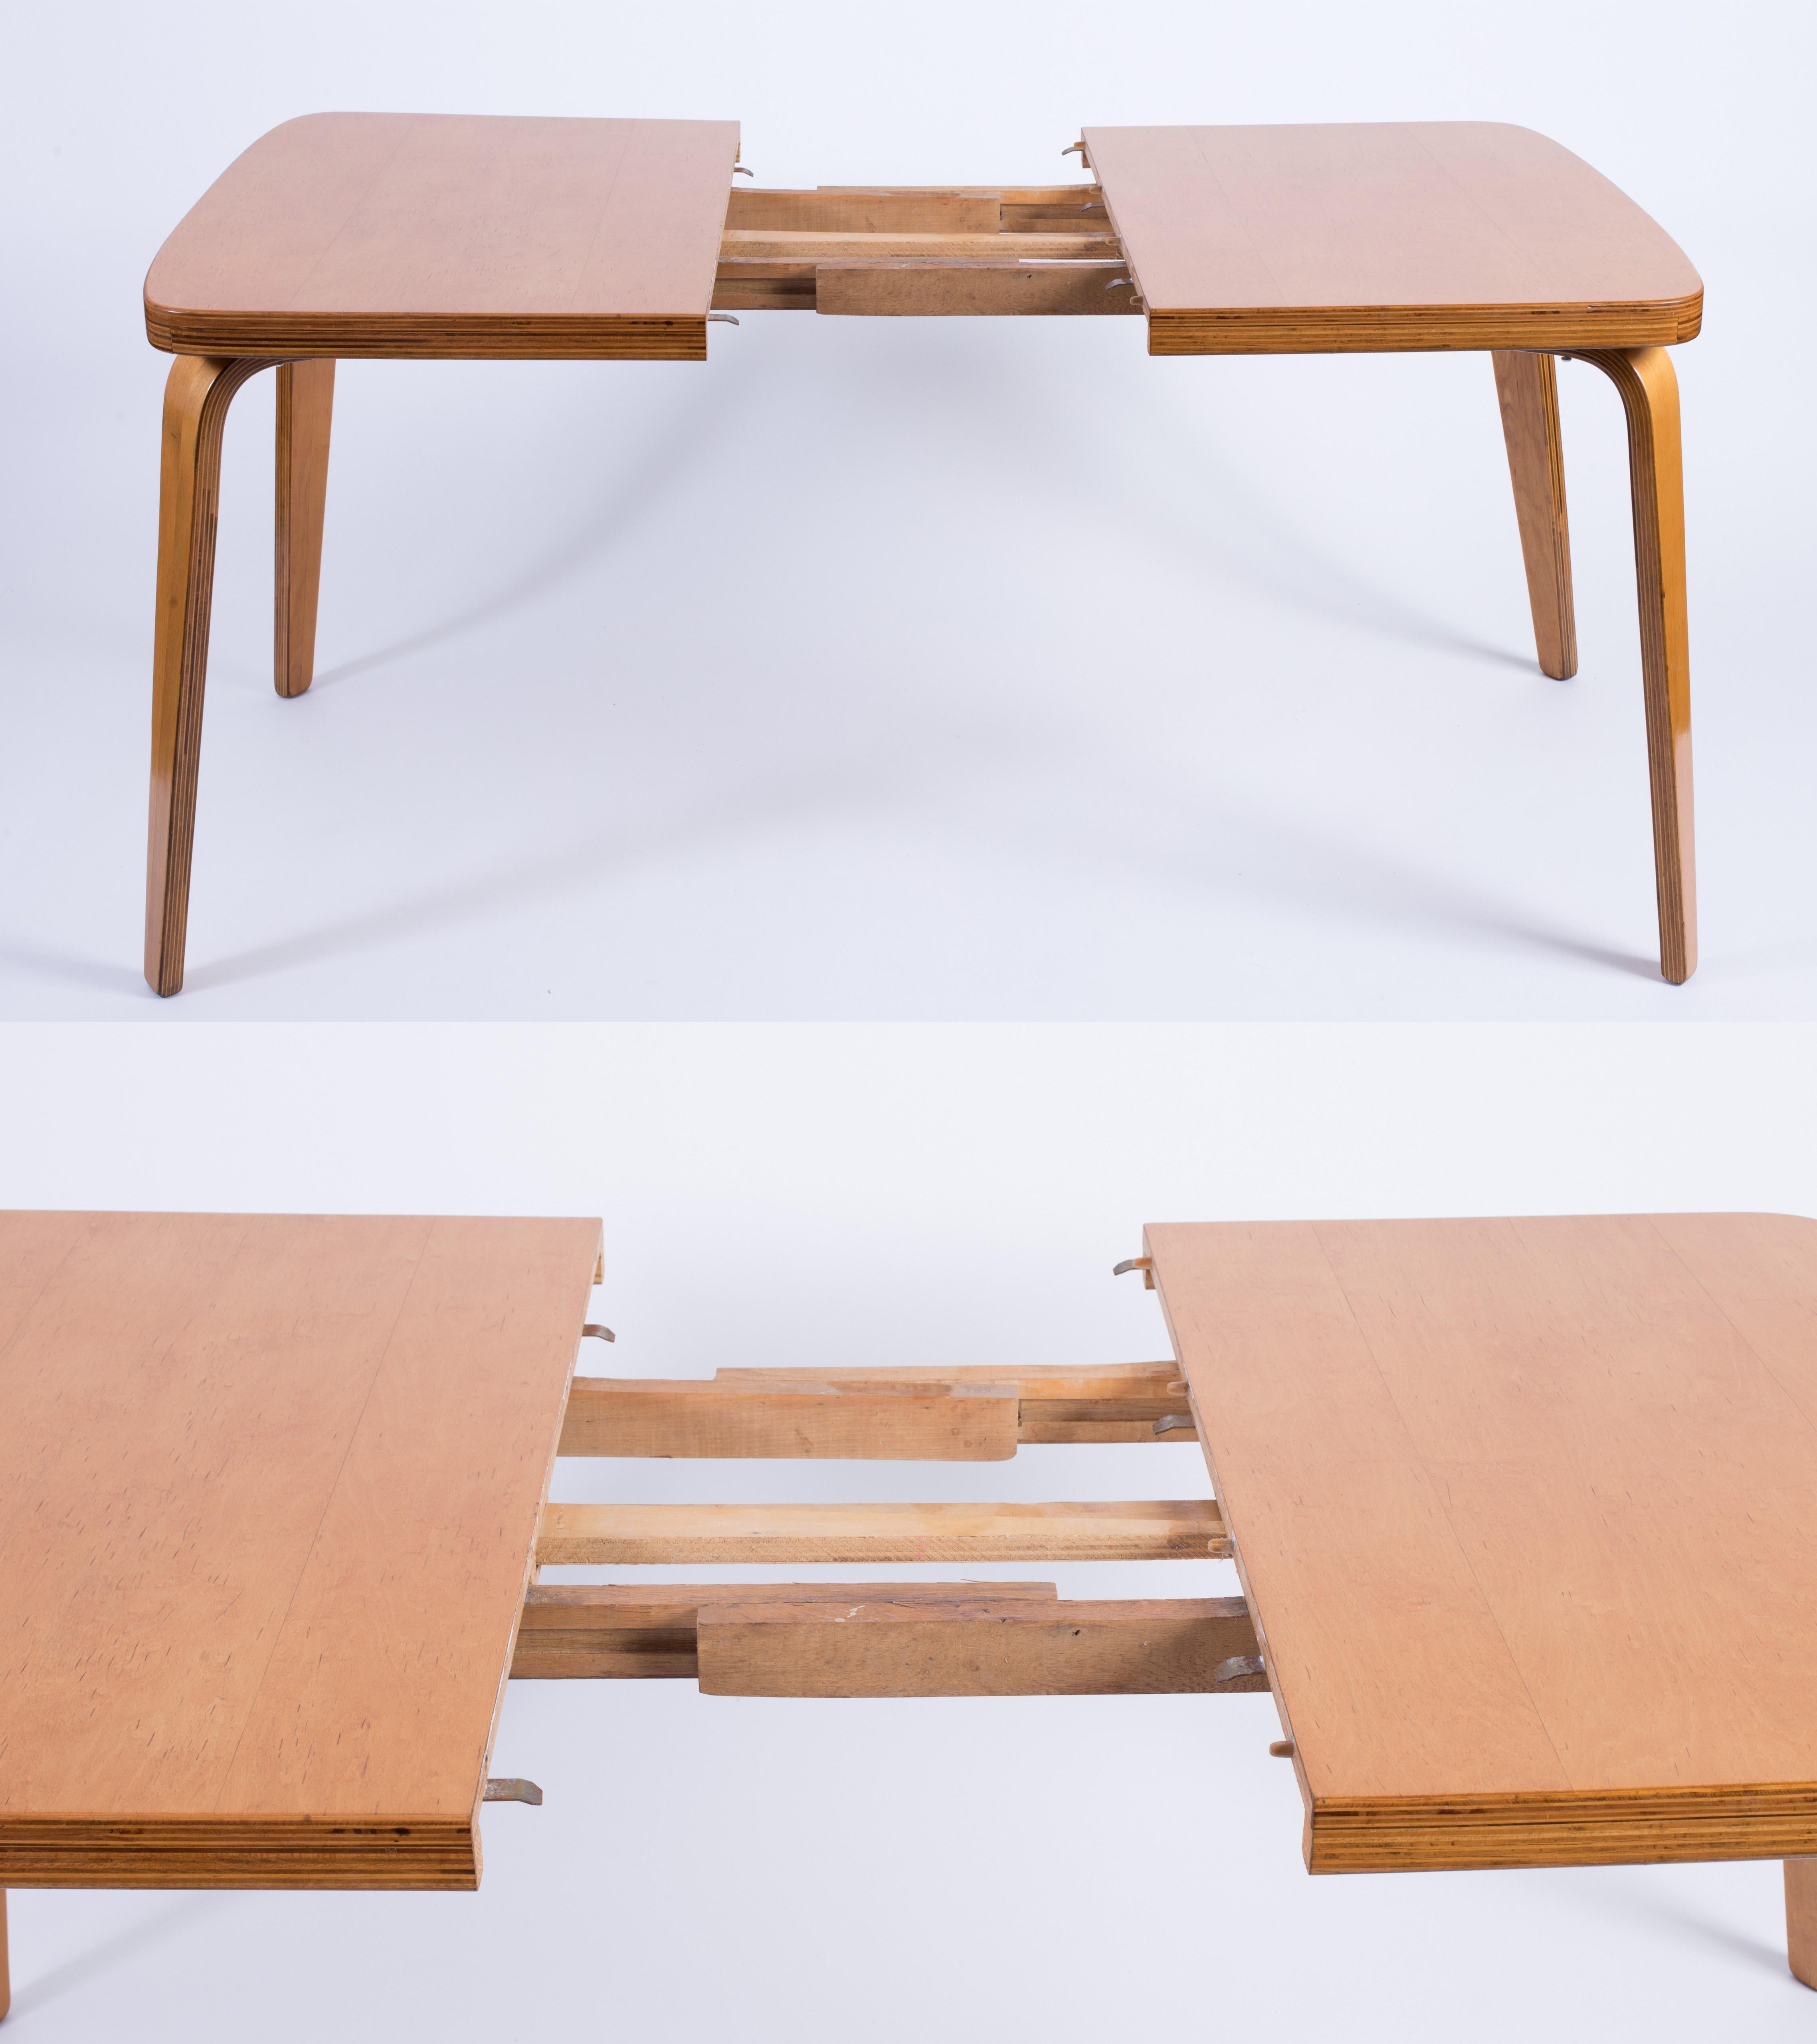 Thaden-Jordan 1940’s Herbert Von Thaden Mid-Century Modern Table/Chairs 5pc Set For Sale 2